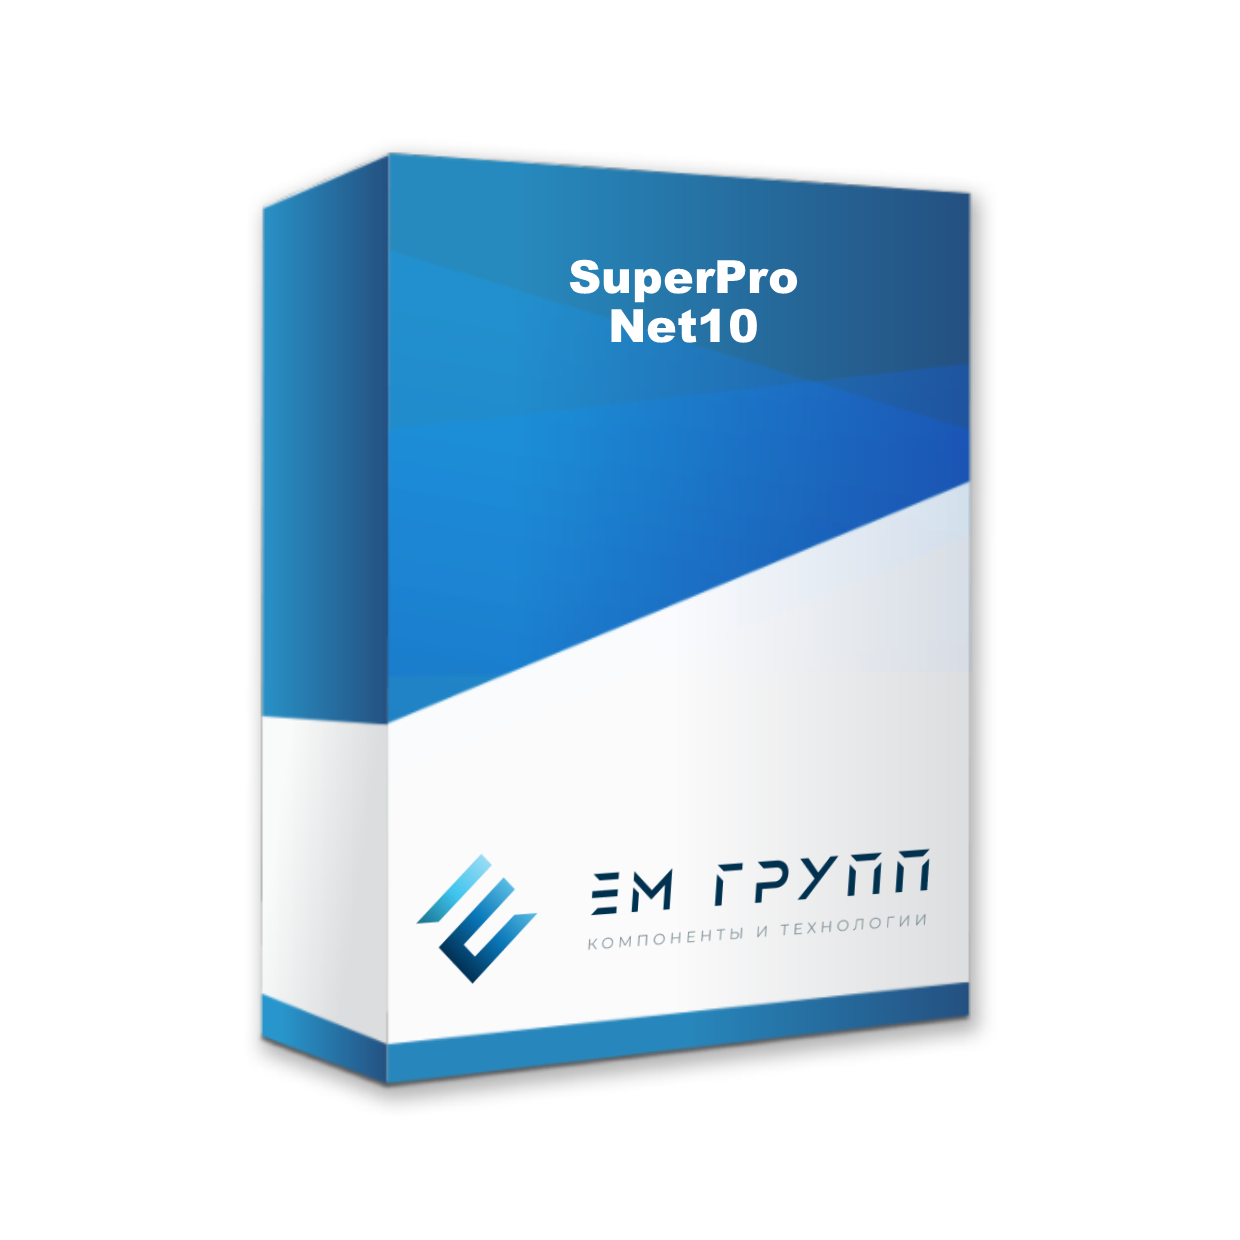 Сетевой ключ SuperPro Net10 от Safenet купить в ЕвроМобайл